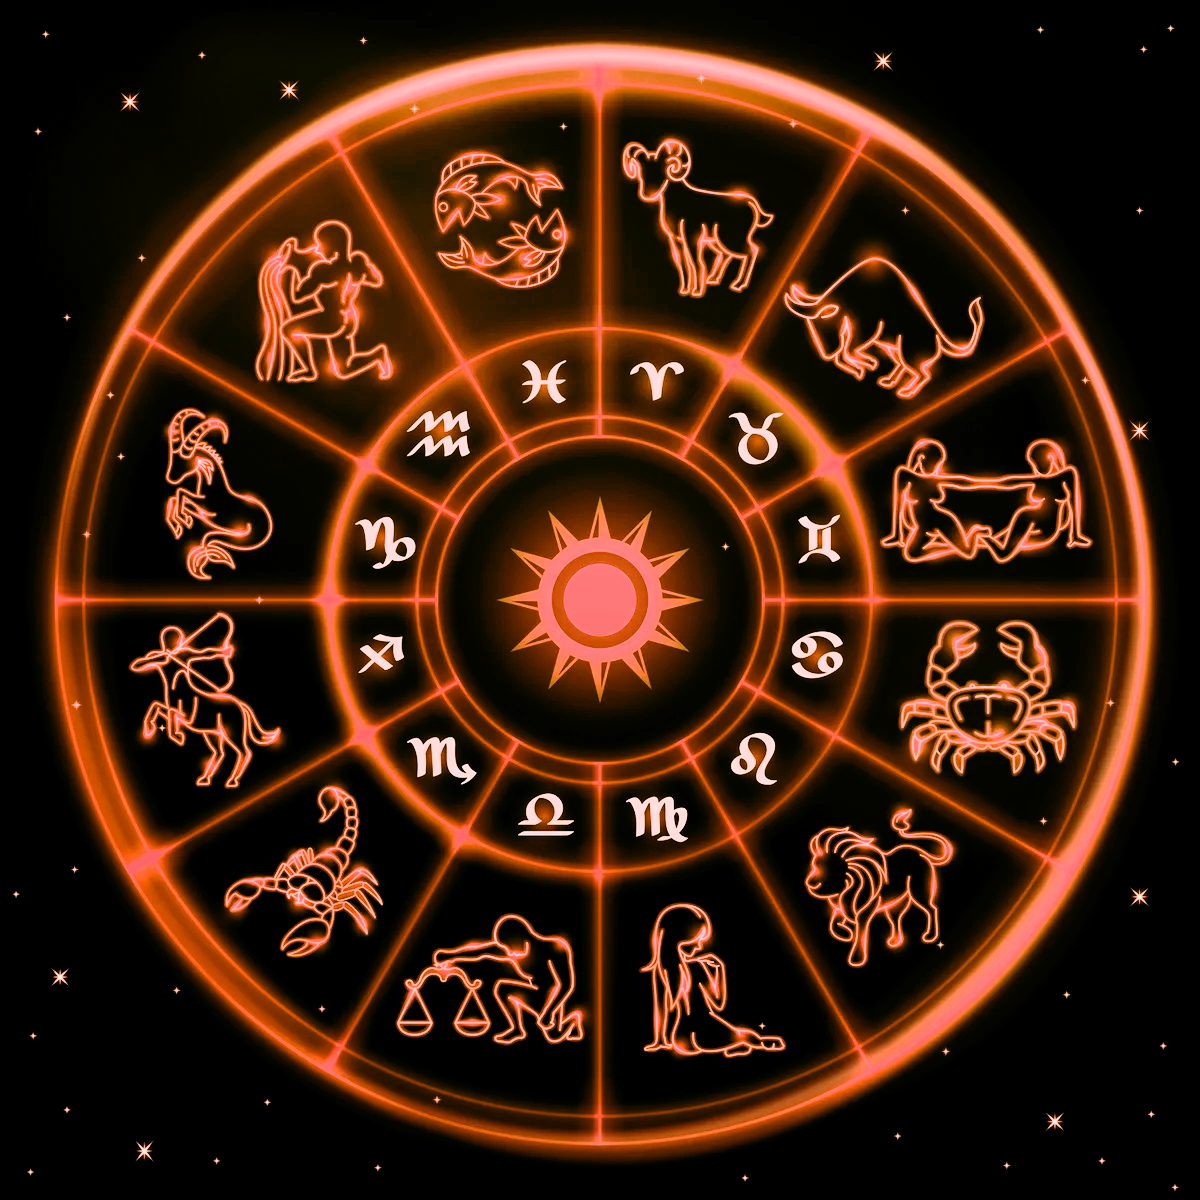 12 октября гороскоп